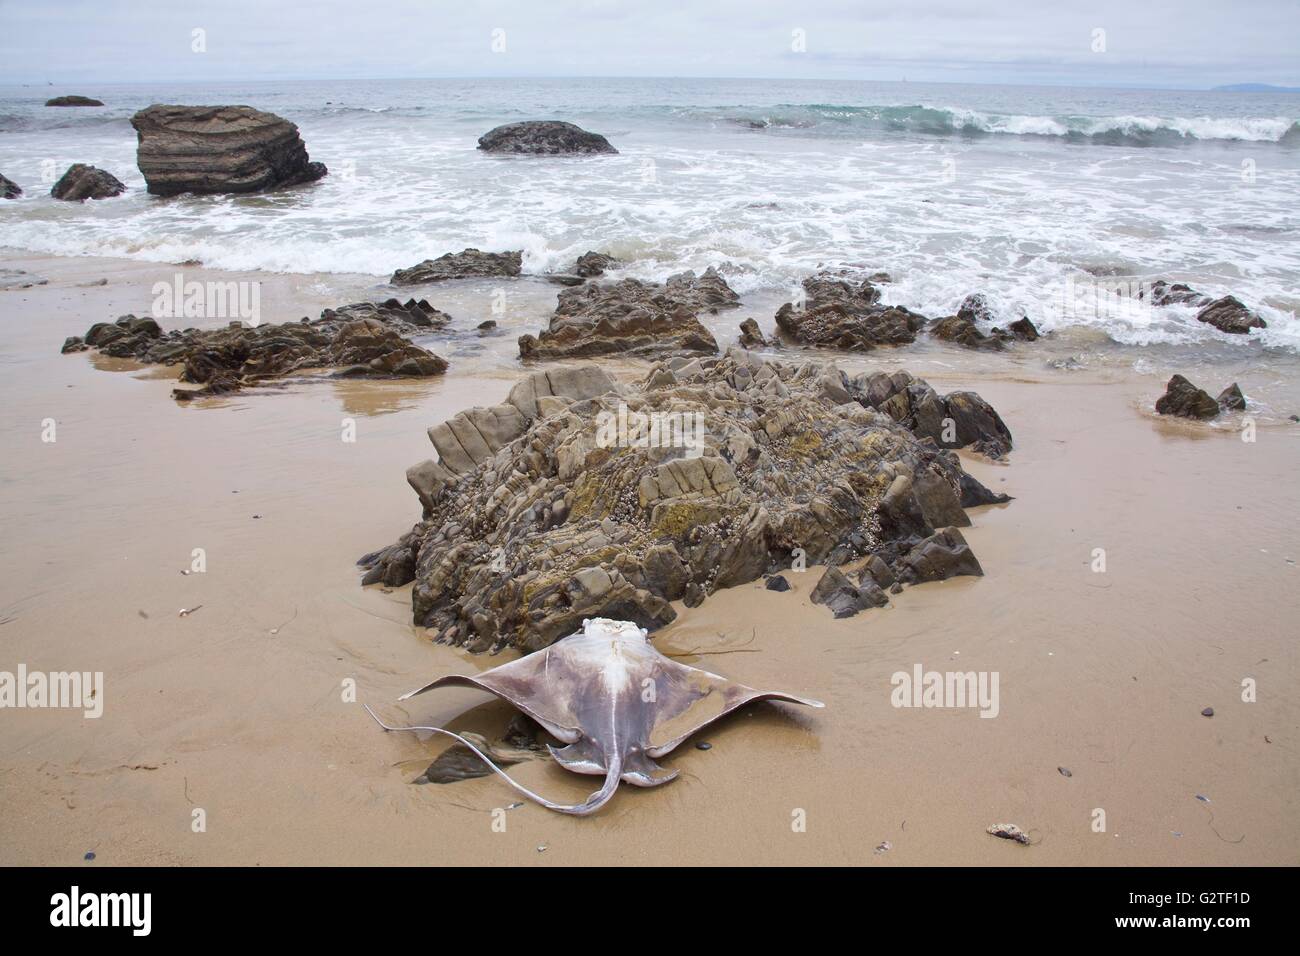 Un sting ray semble étirer les extensions pour vol sur une plage rocheuse Banque D'Images